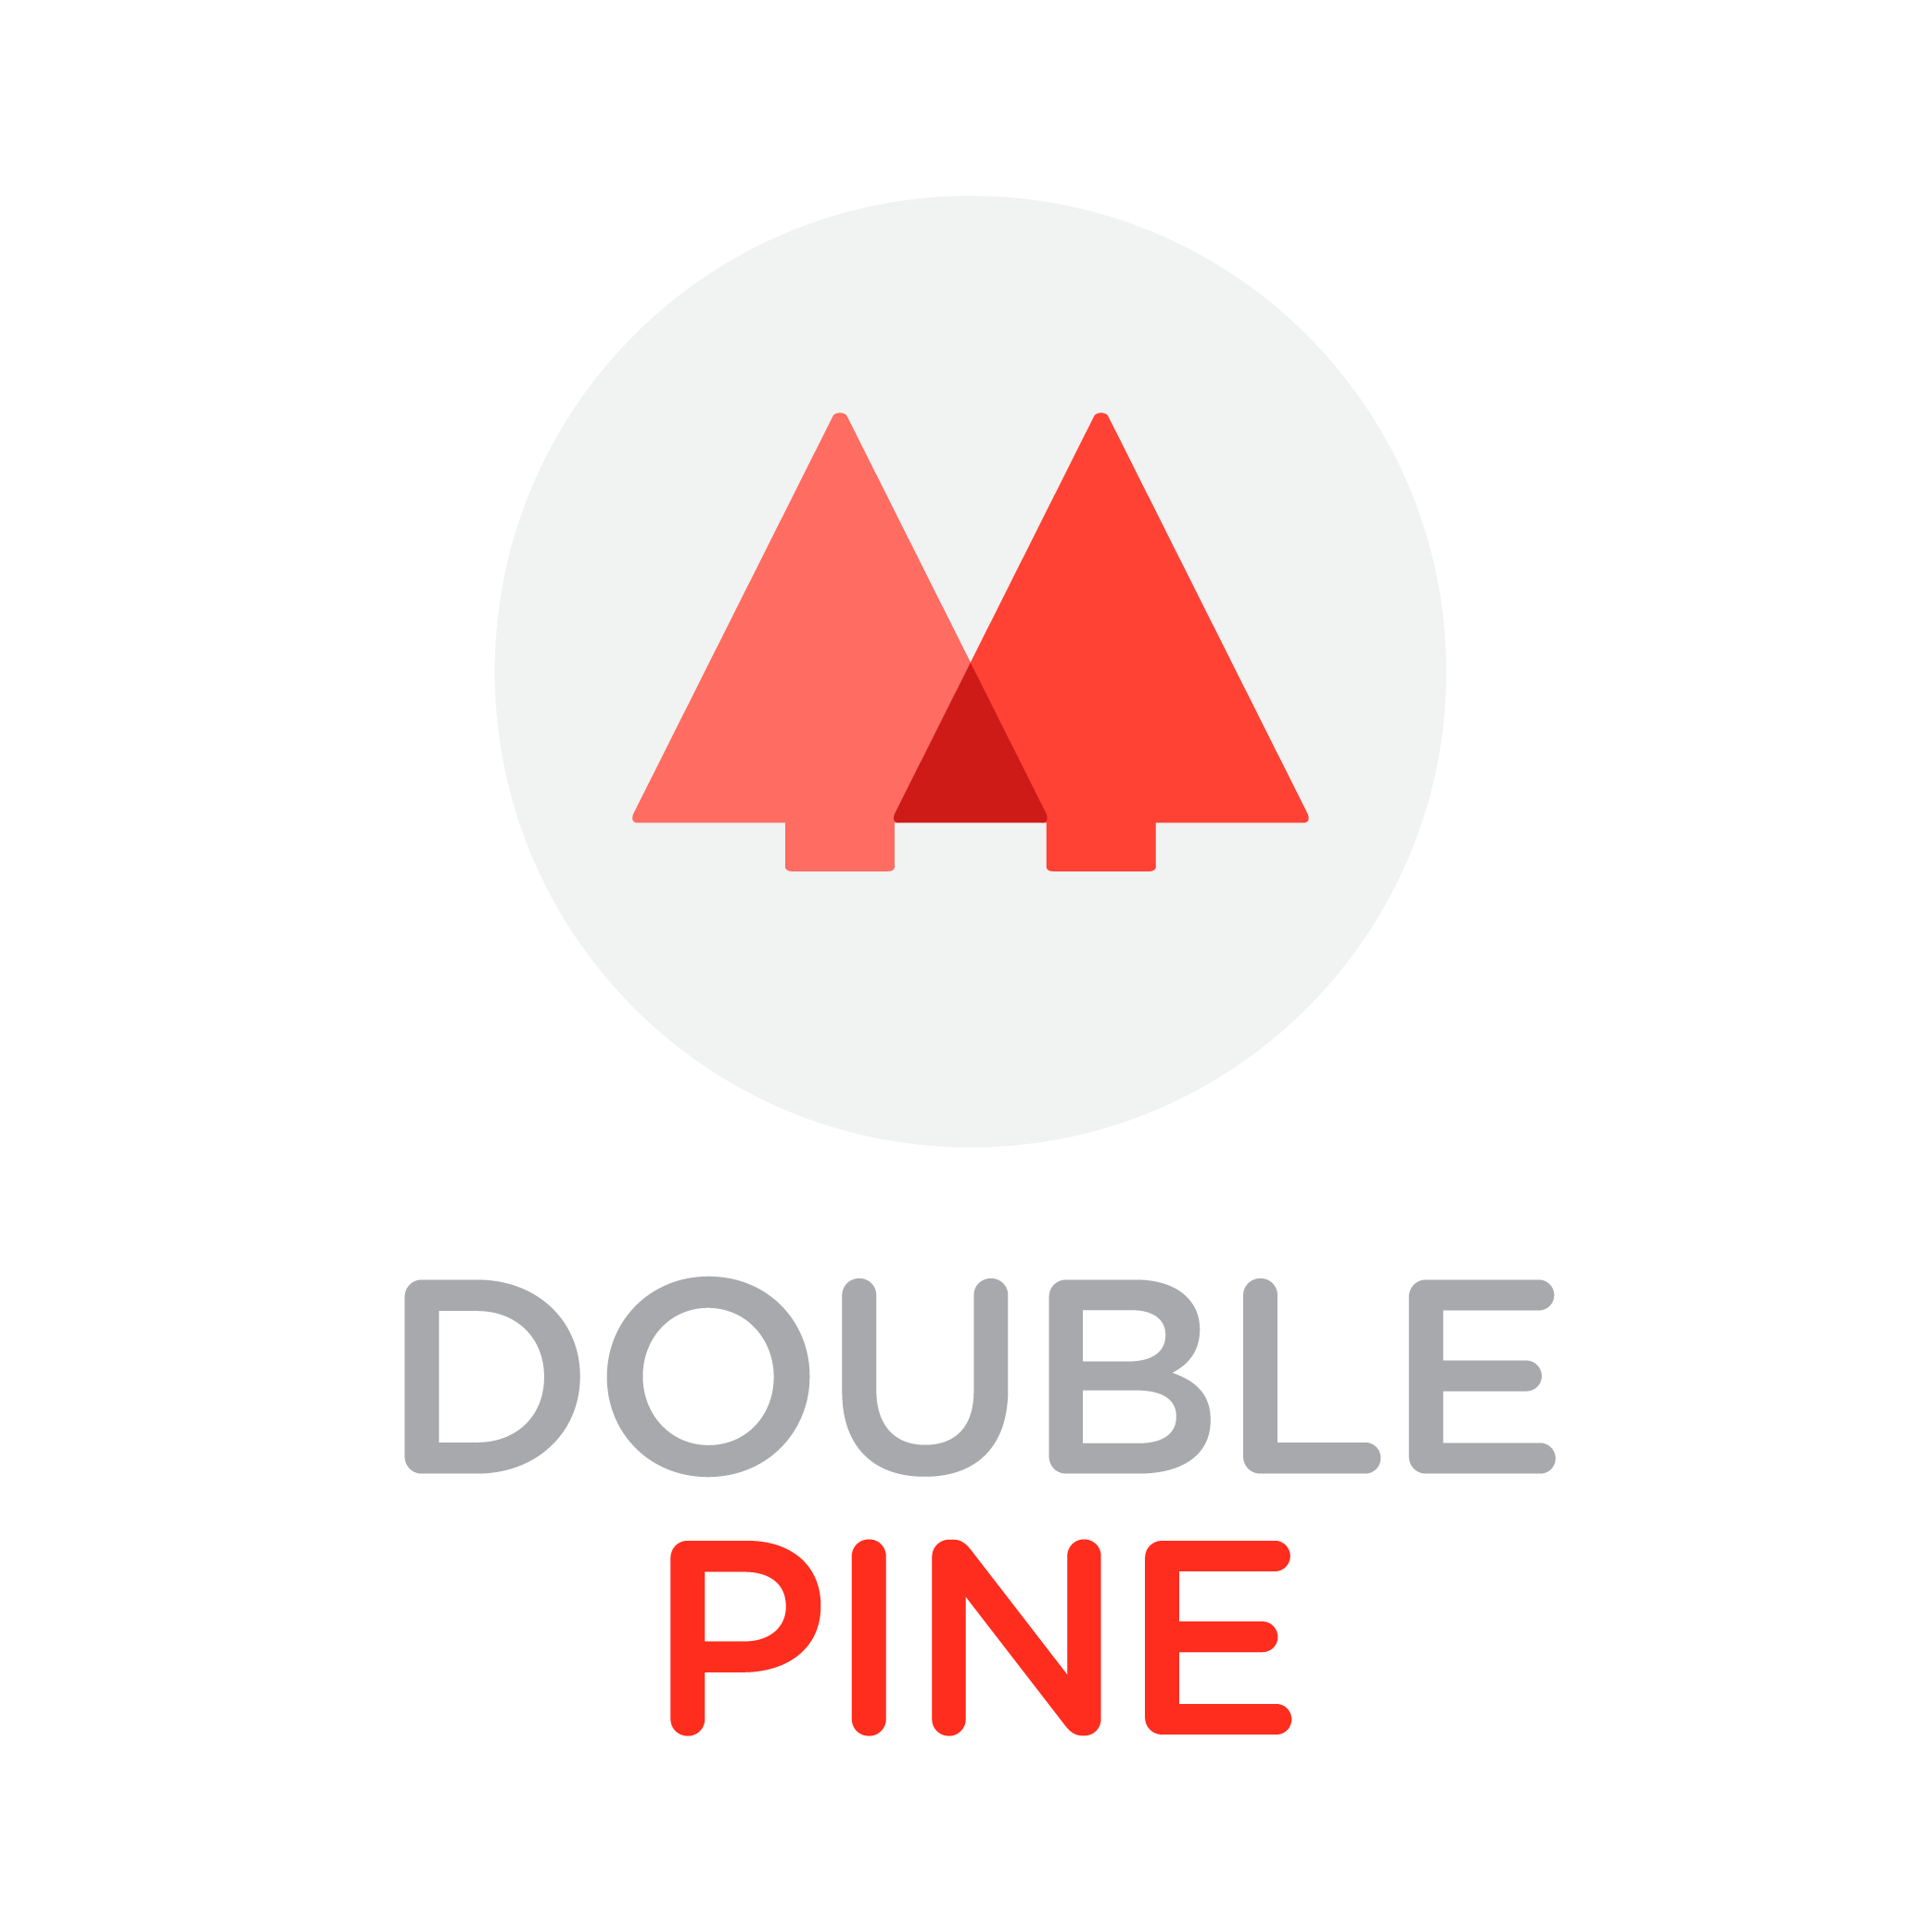 Doublepine Co.,Ltd